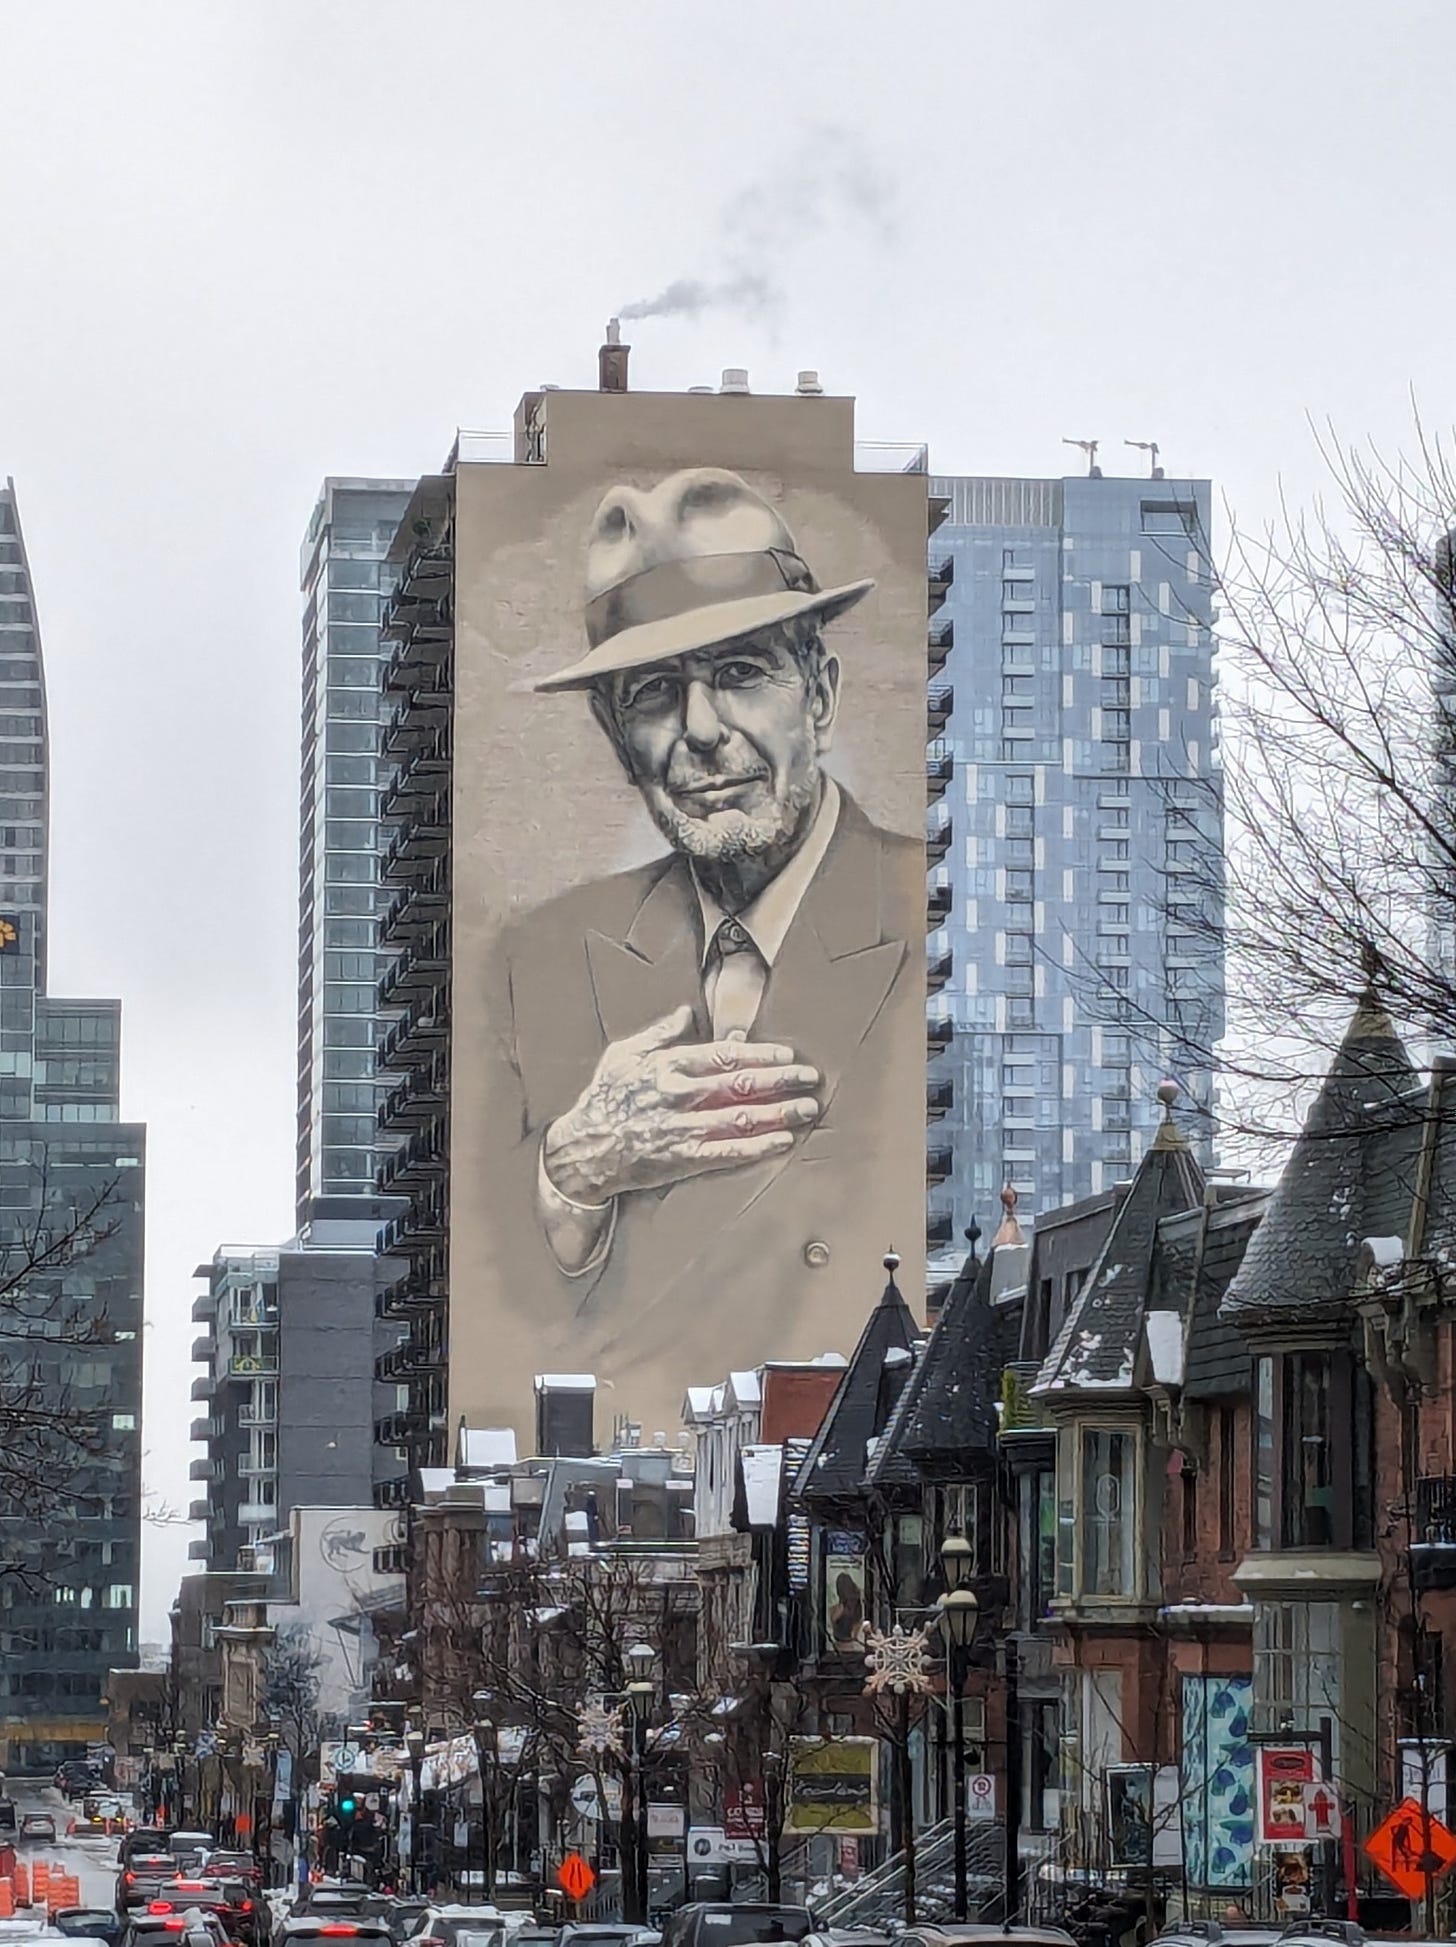 Leonard Cohen image on side of a building